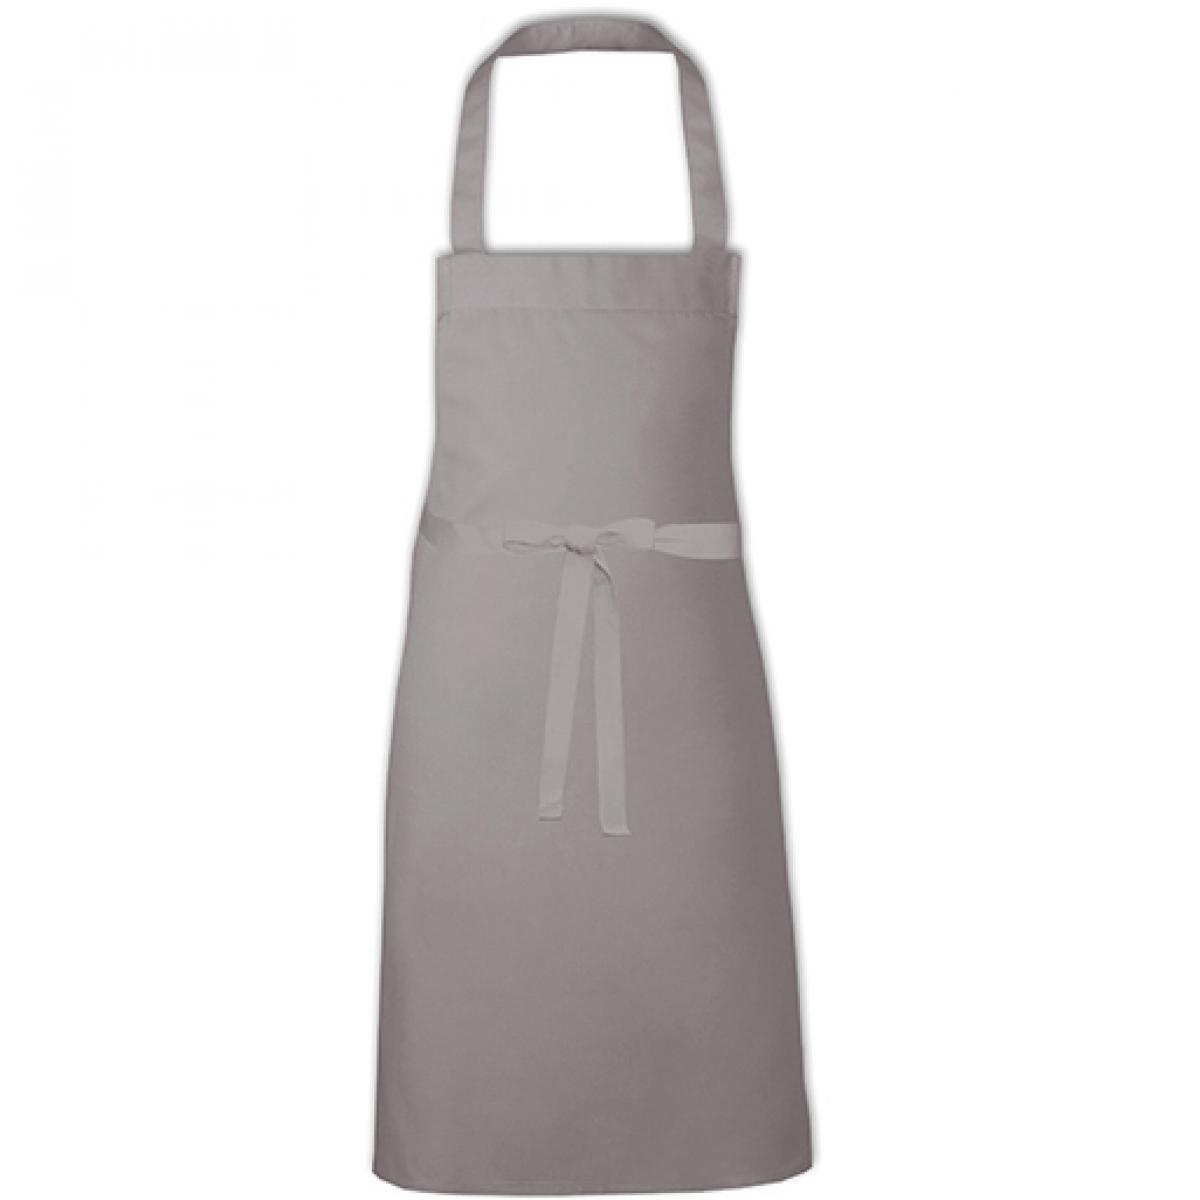 Hersteller: Link Kitchen Wear Herstellernummer: BBQ8073 Artikelbezeichnung: Barbecue Apron - 73 x 80 cm - Waschbar bis 60 °C Farbe: Mouse Grey